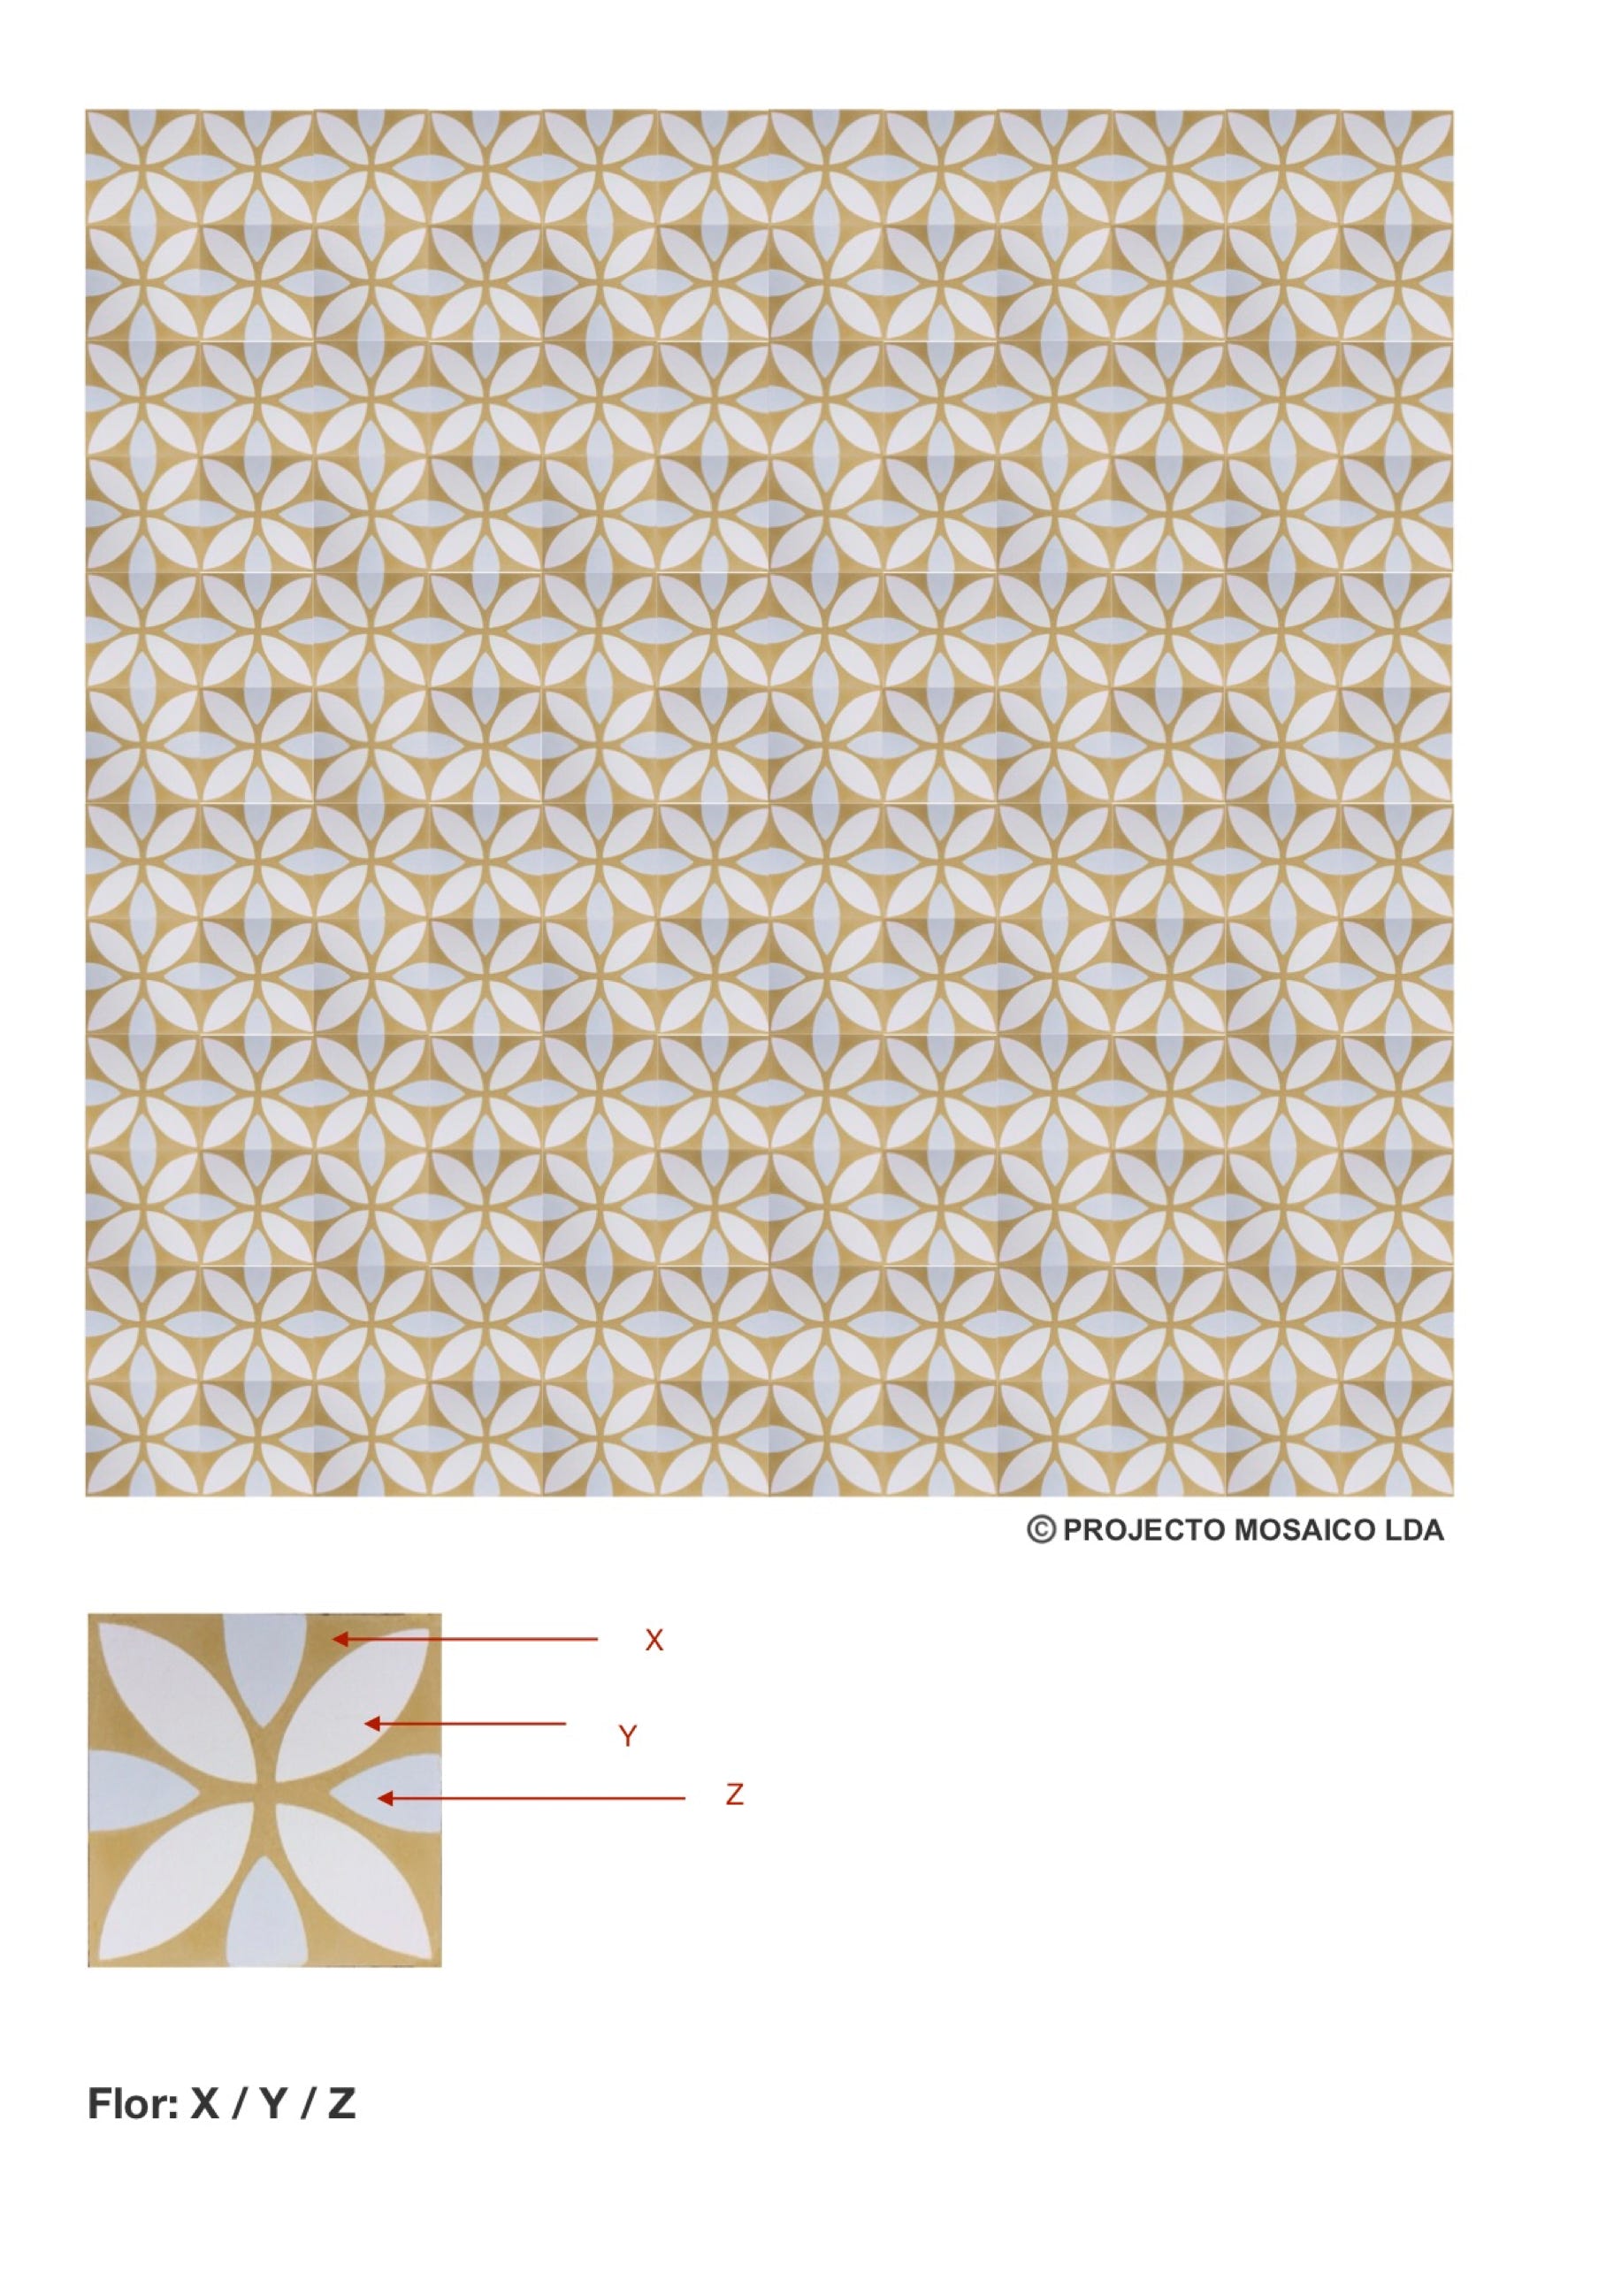 illustração de aplicação do mosaico hidráulico ref: Flor